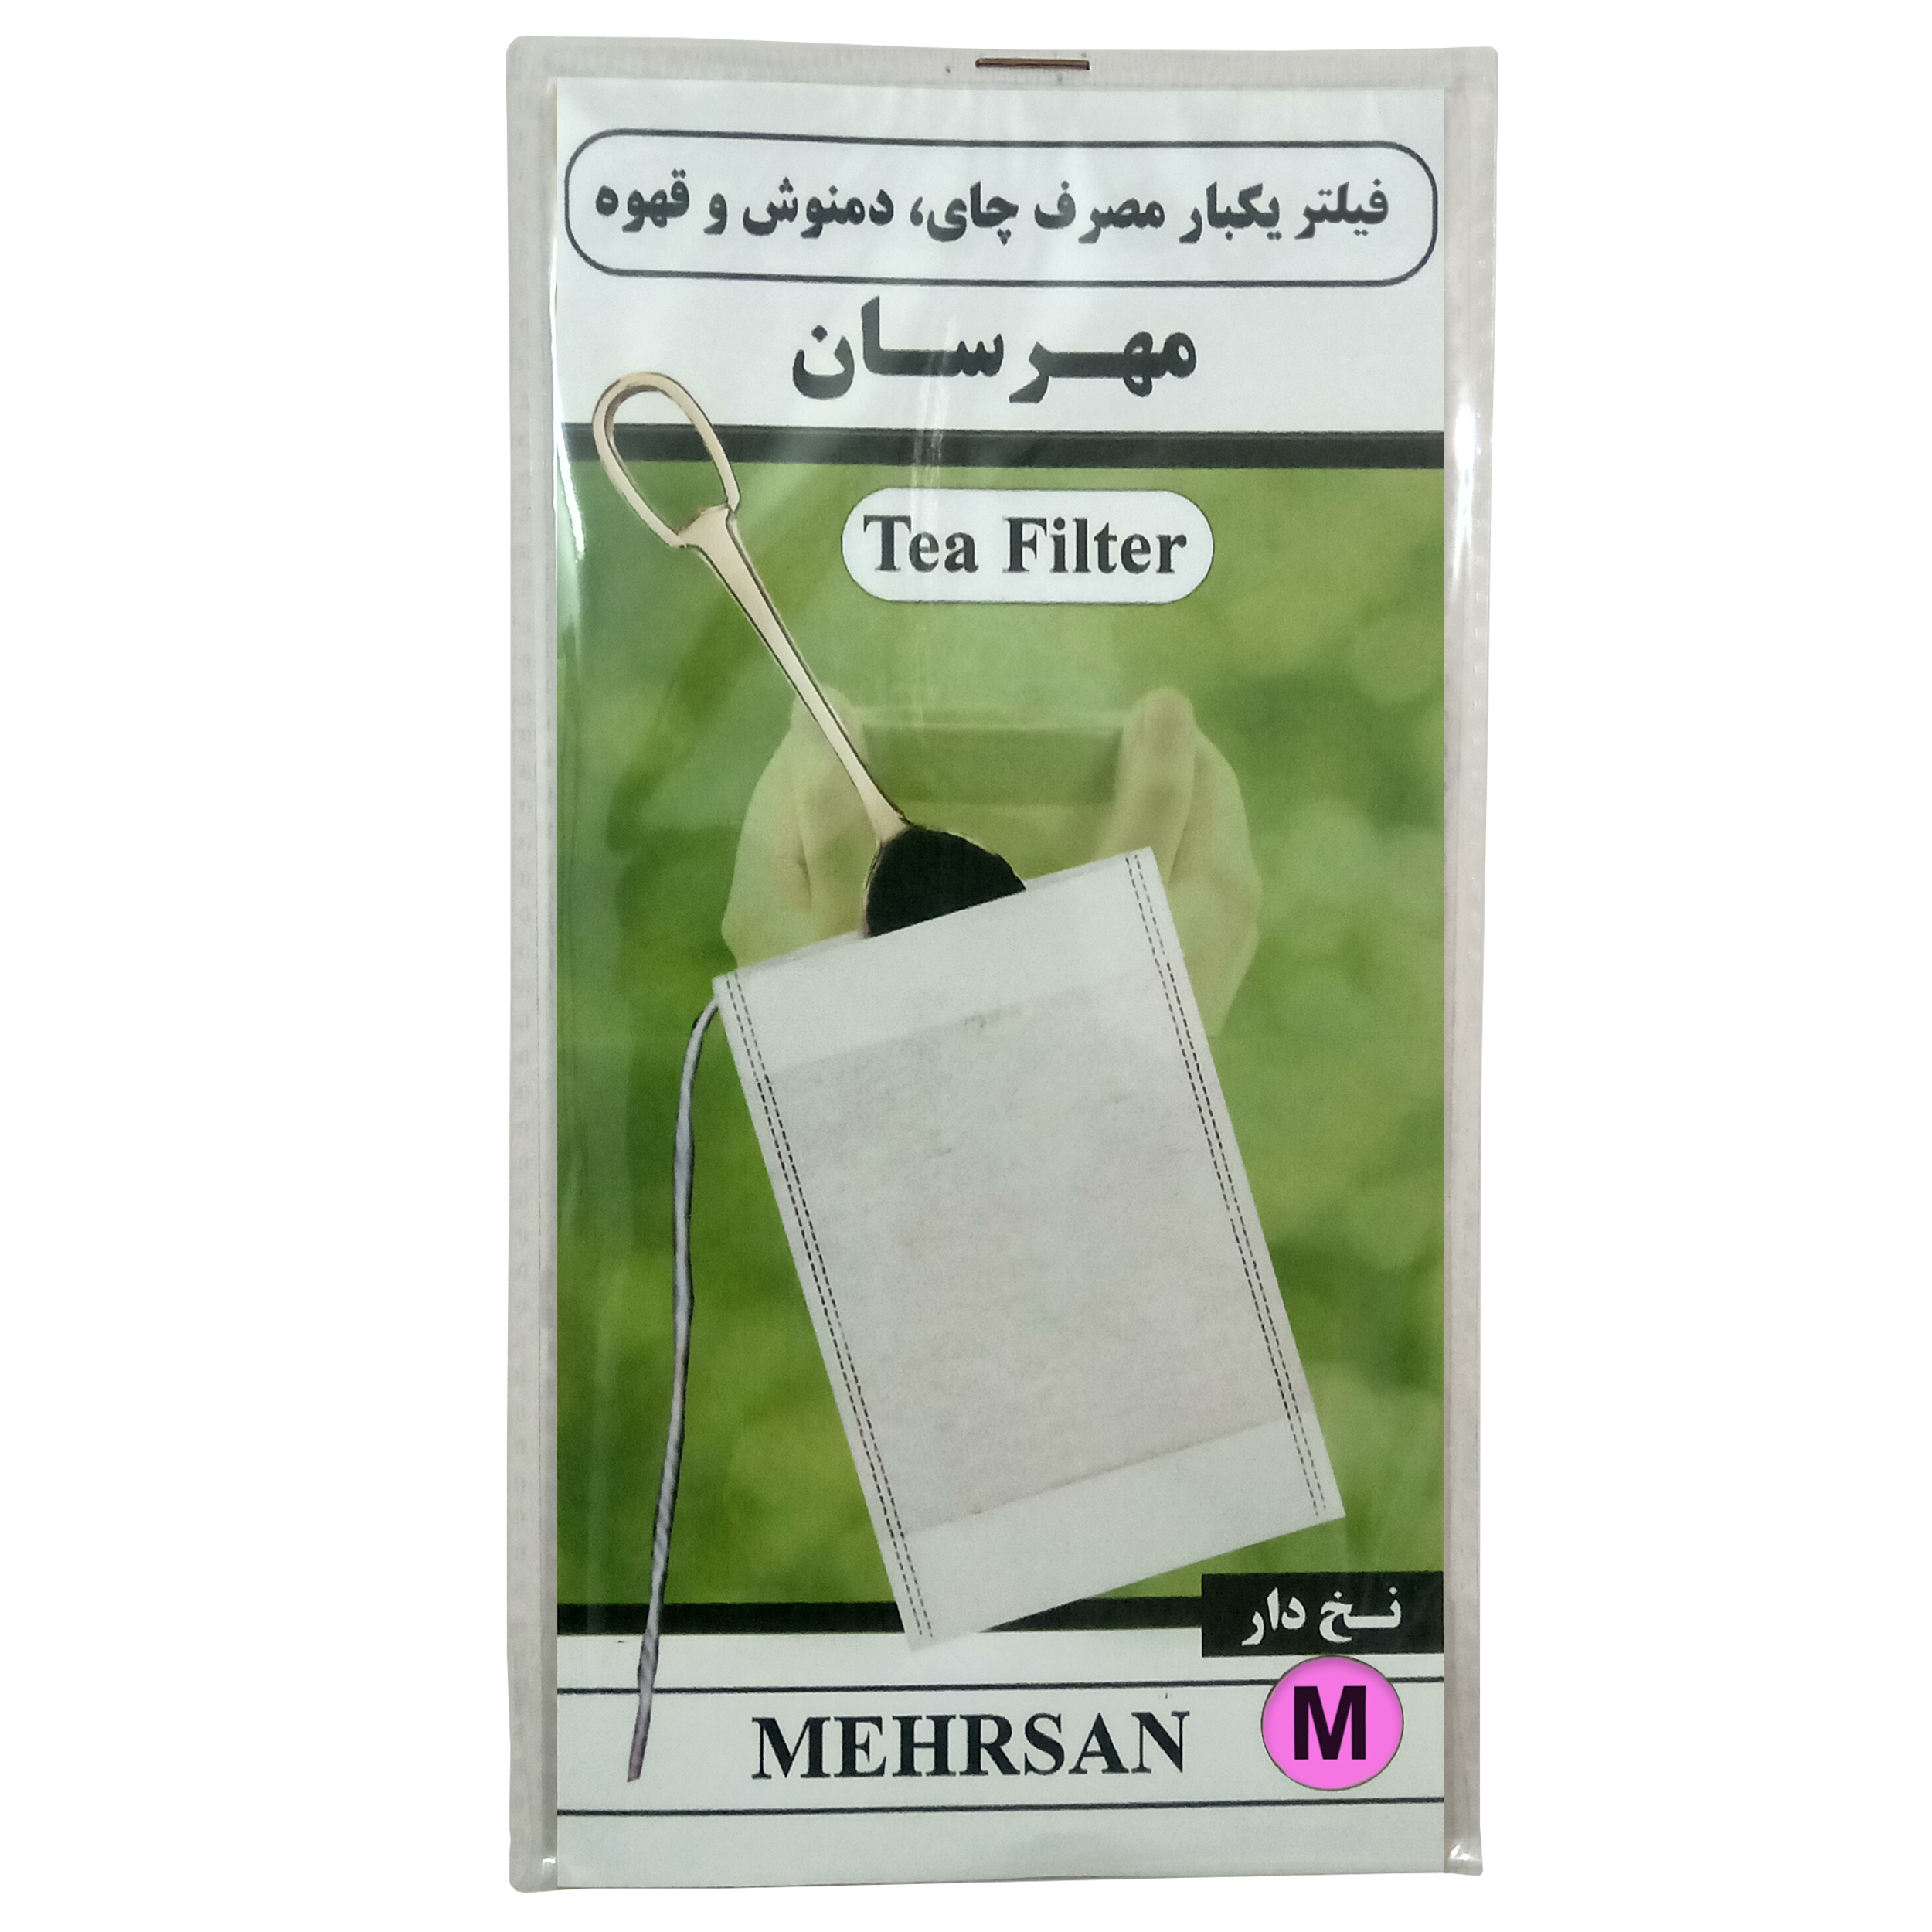 فیلتر چای مهرسان مدل M-50 بسته 50 عددی